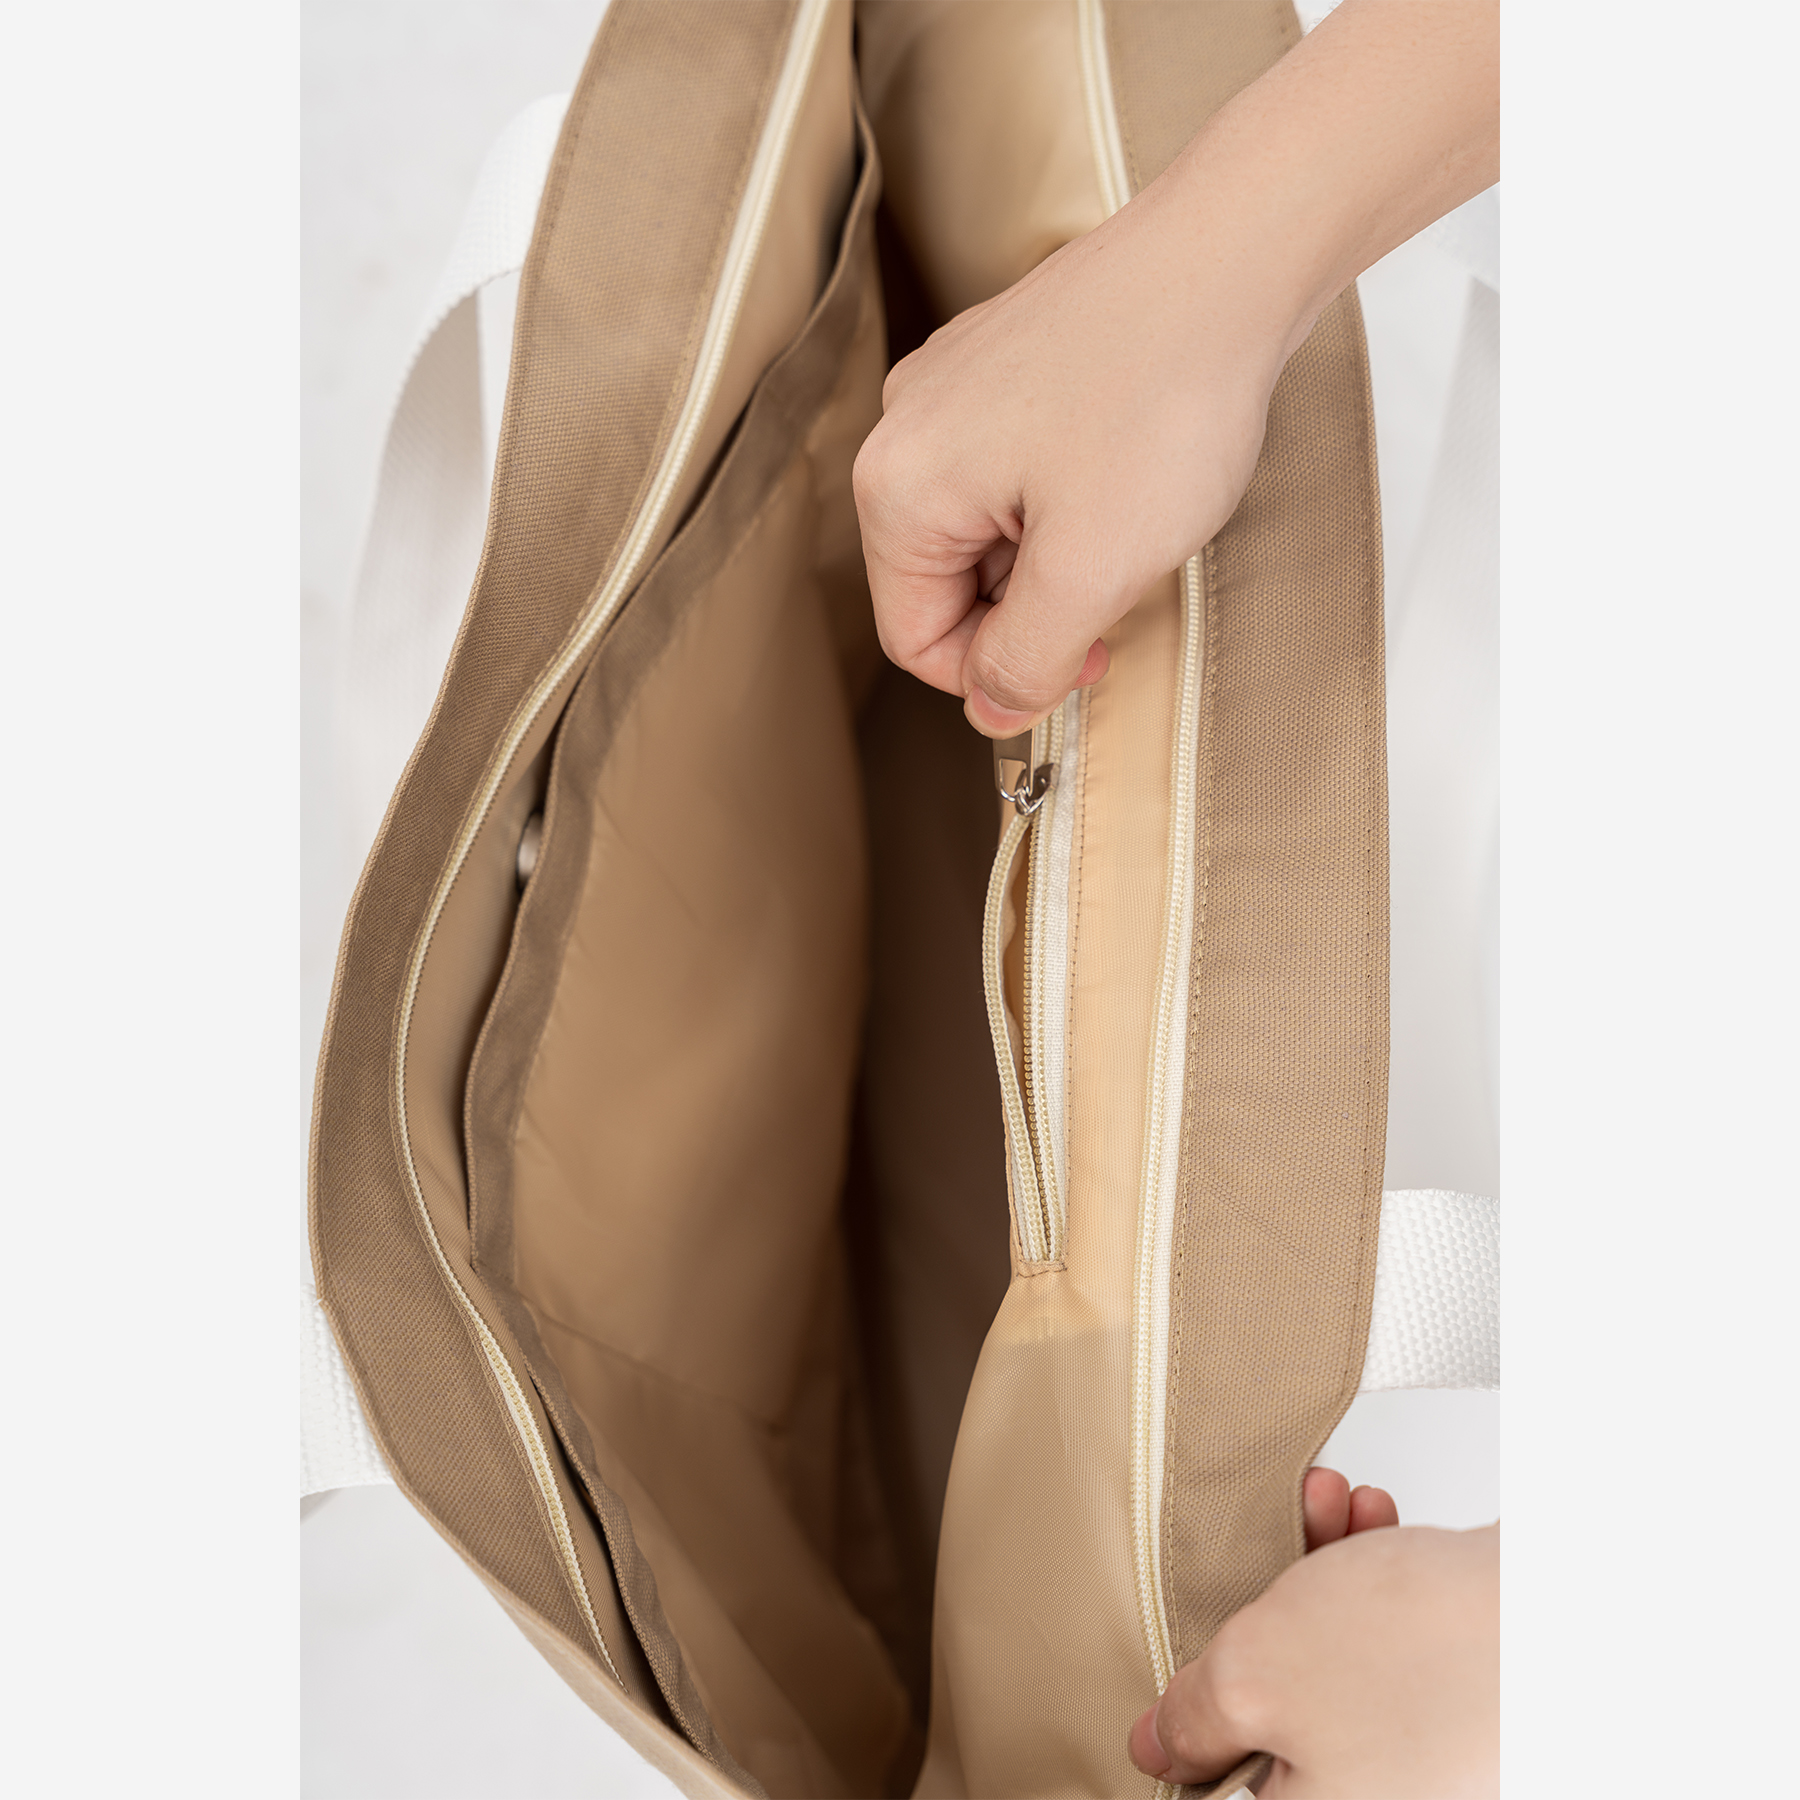 Túi Tote thời trang Big size phối dây trắng Hibi Sports A012, chất liệu Canvas cao cấp phù hợp đi chơi, đi tập